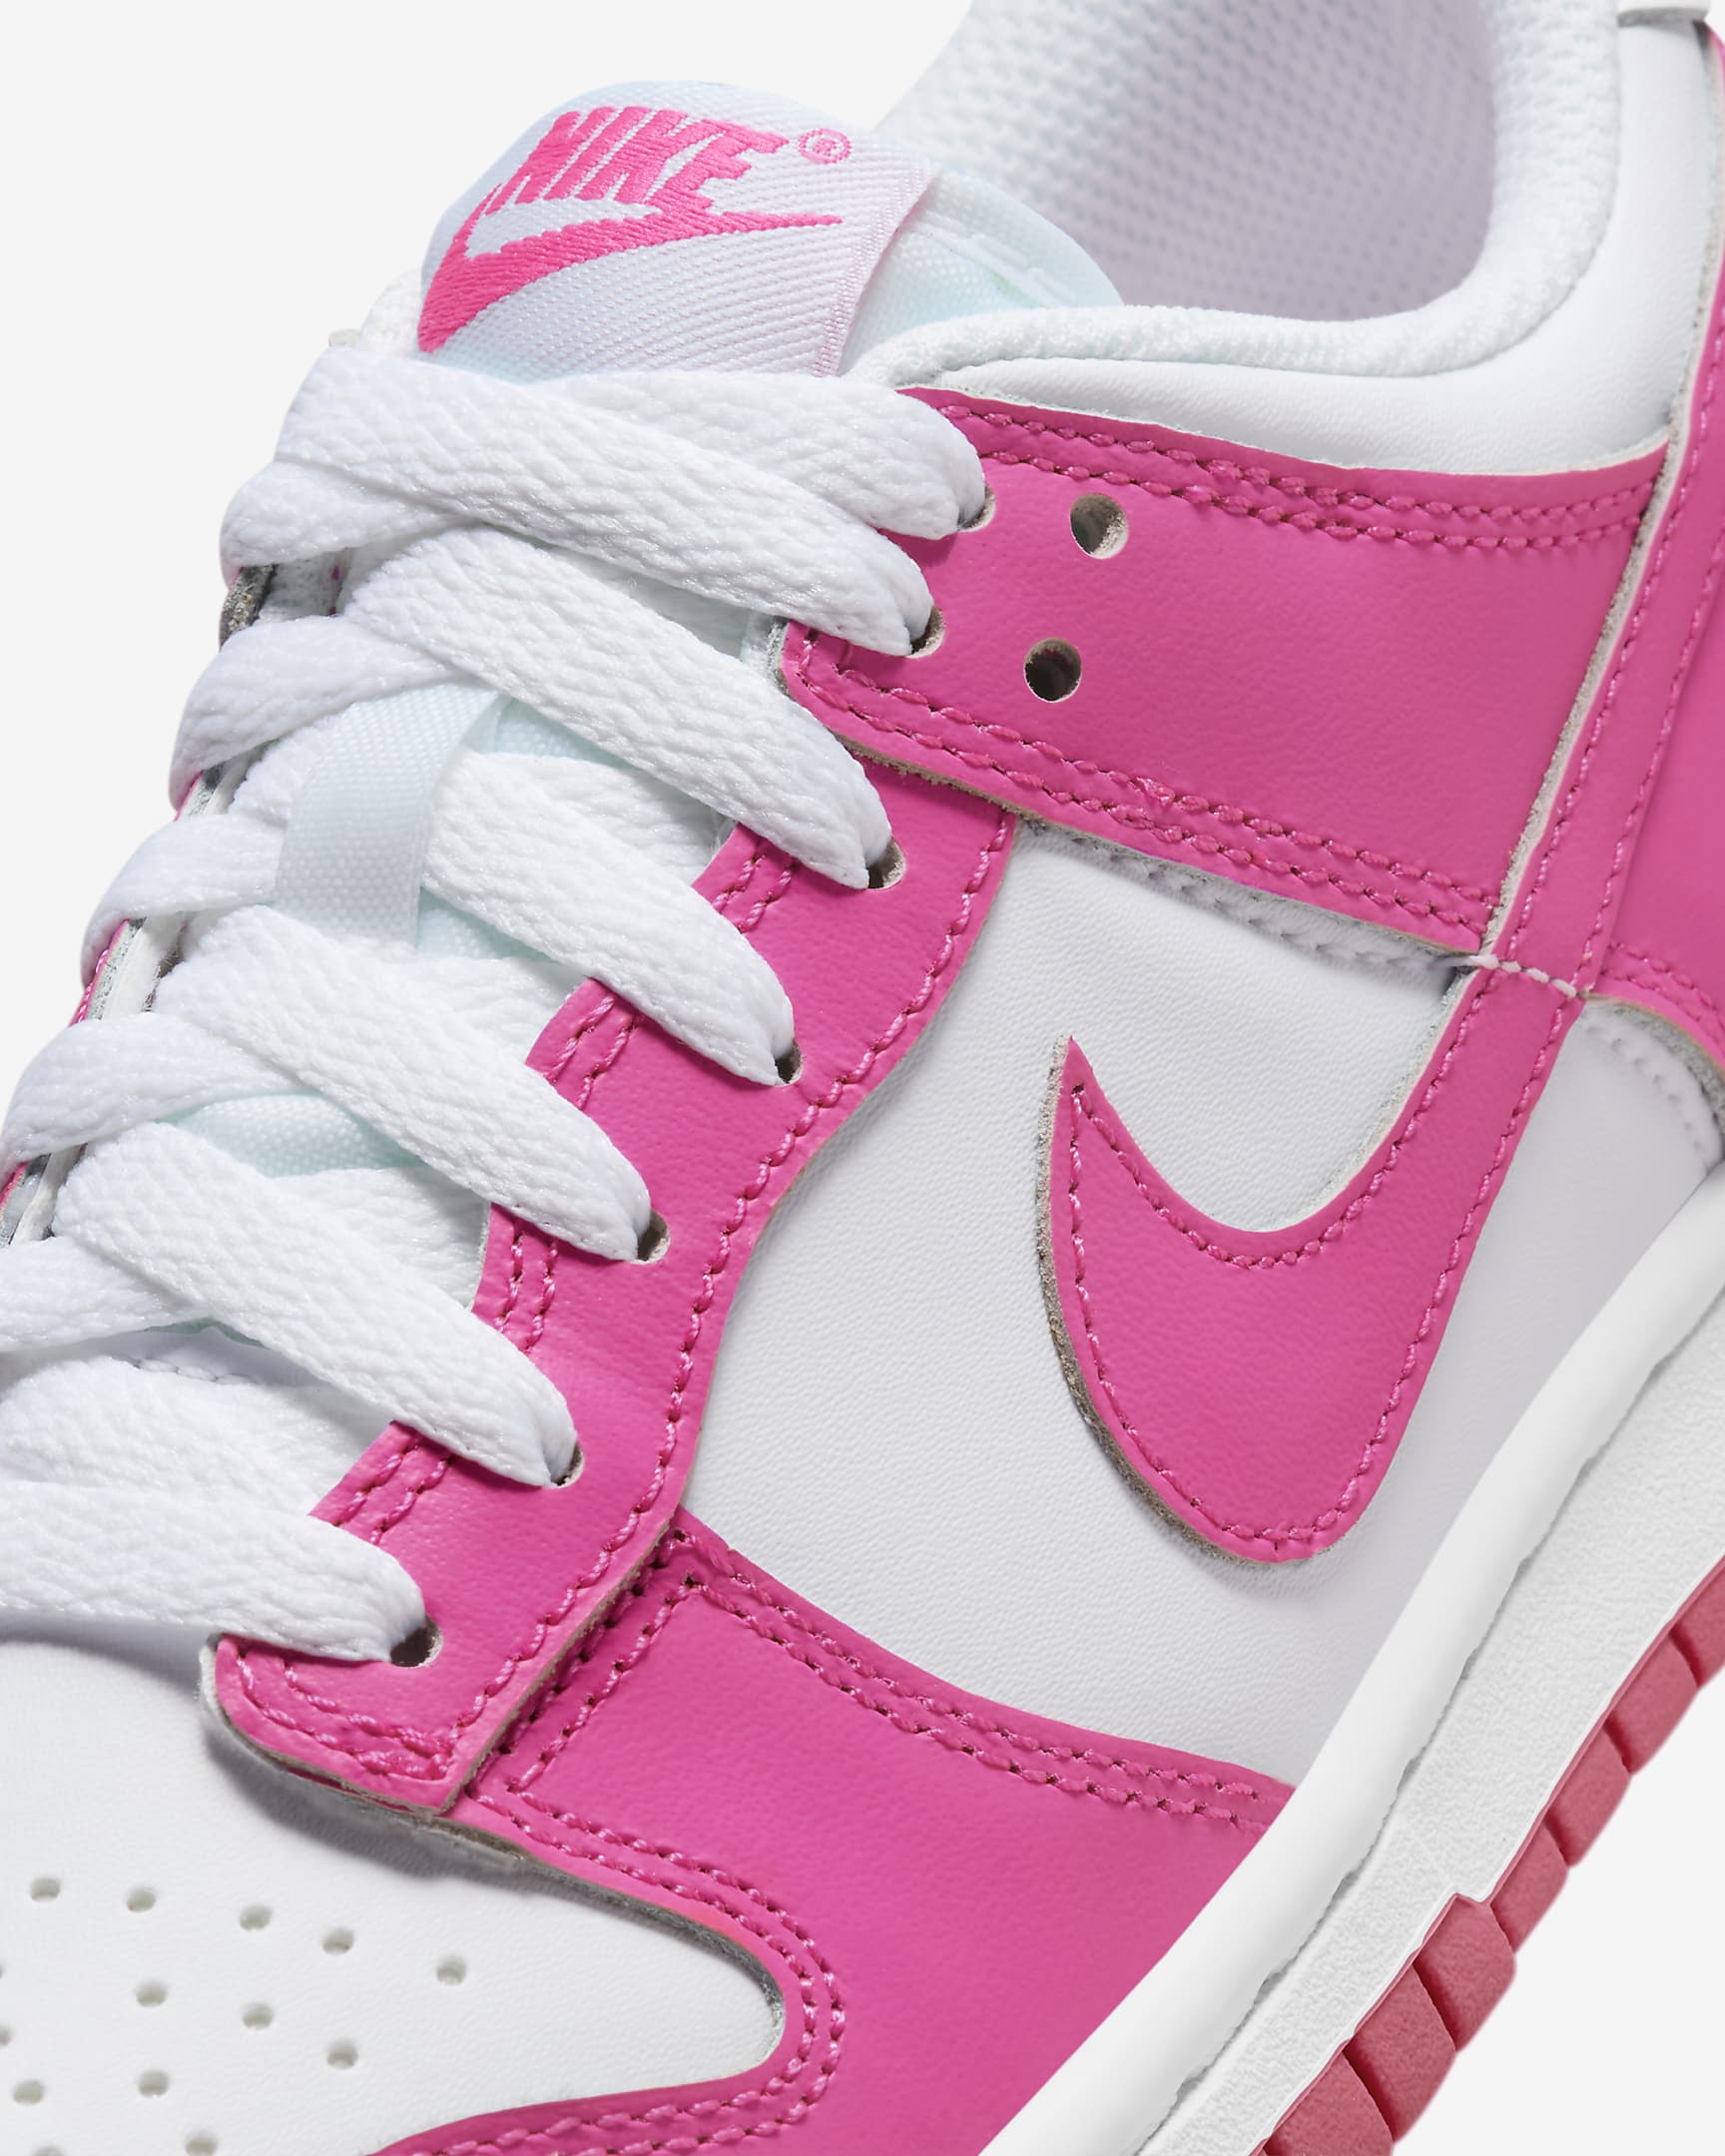 Buty dla dużych dzieci Nike Dunk Low - Biel/Różowy/Laser Fuchsia